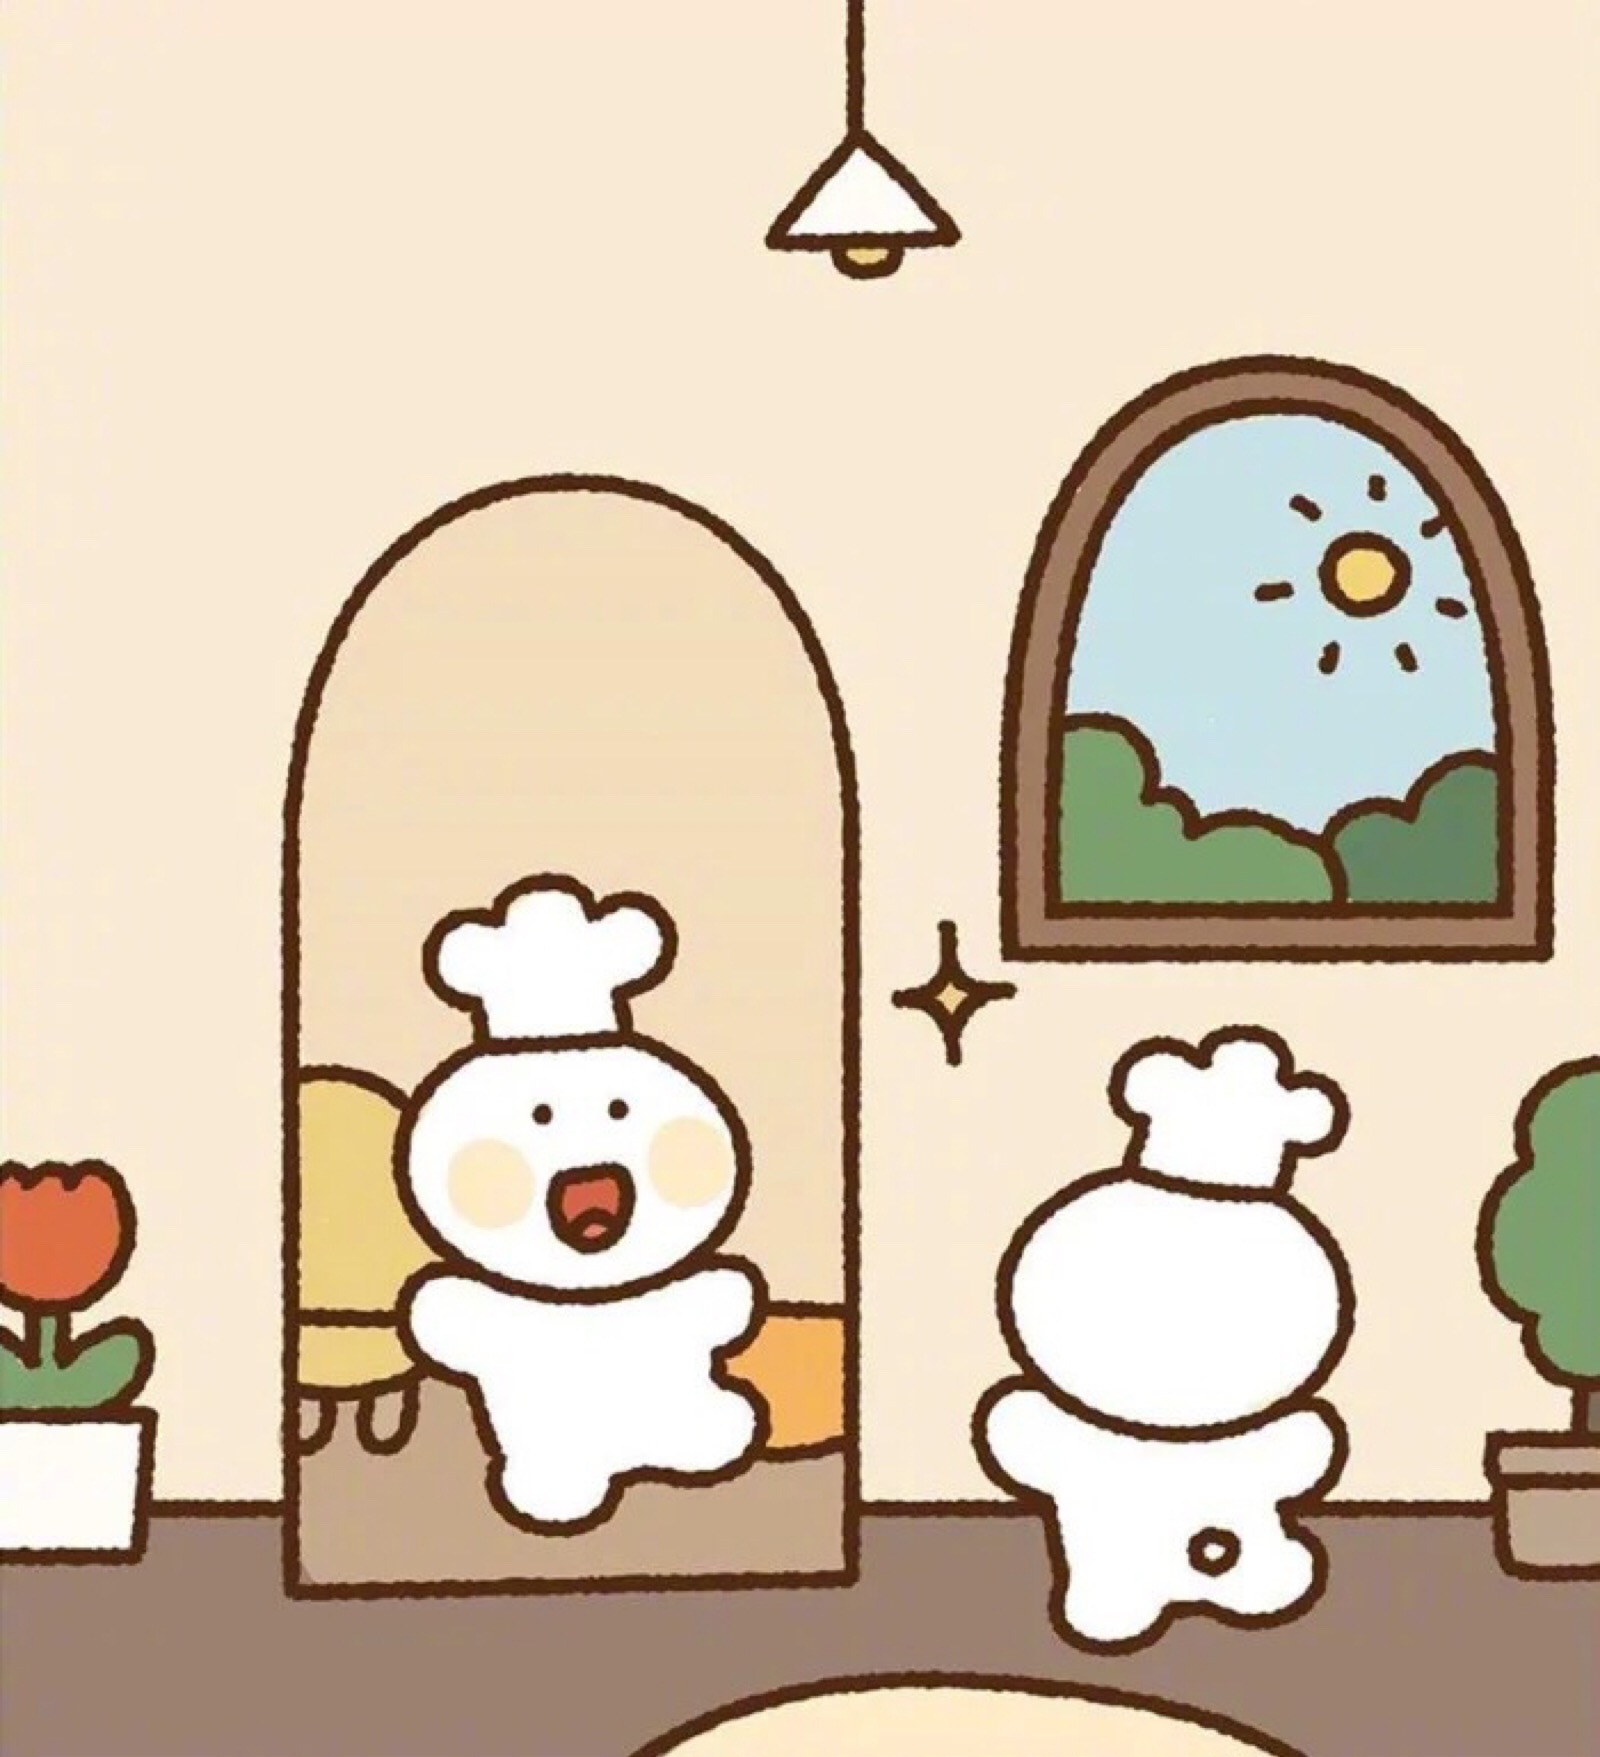 韩国画师for_mee_绘制的软萌可爱插画合辑,小女孩,小熊和小兔兔的快乐